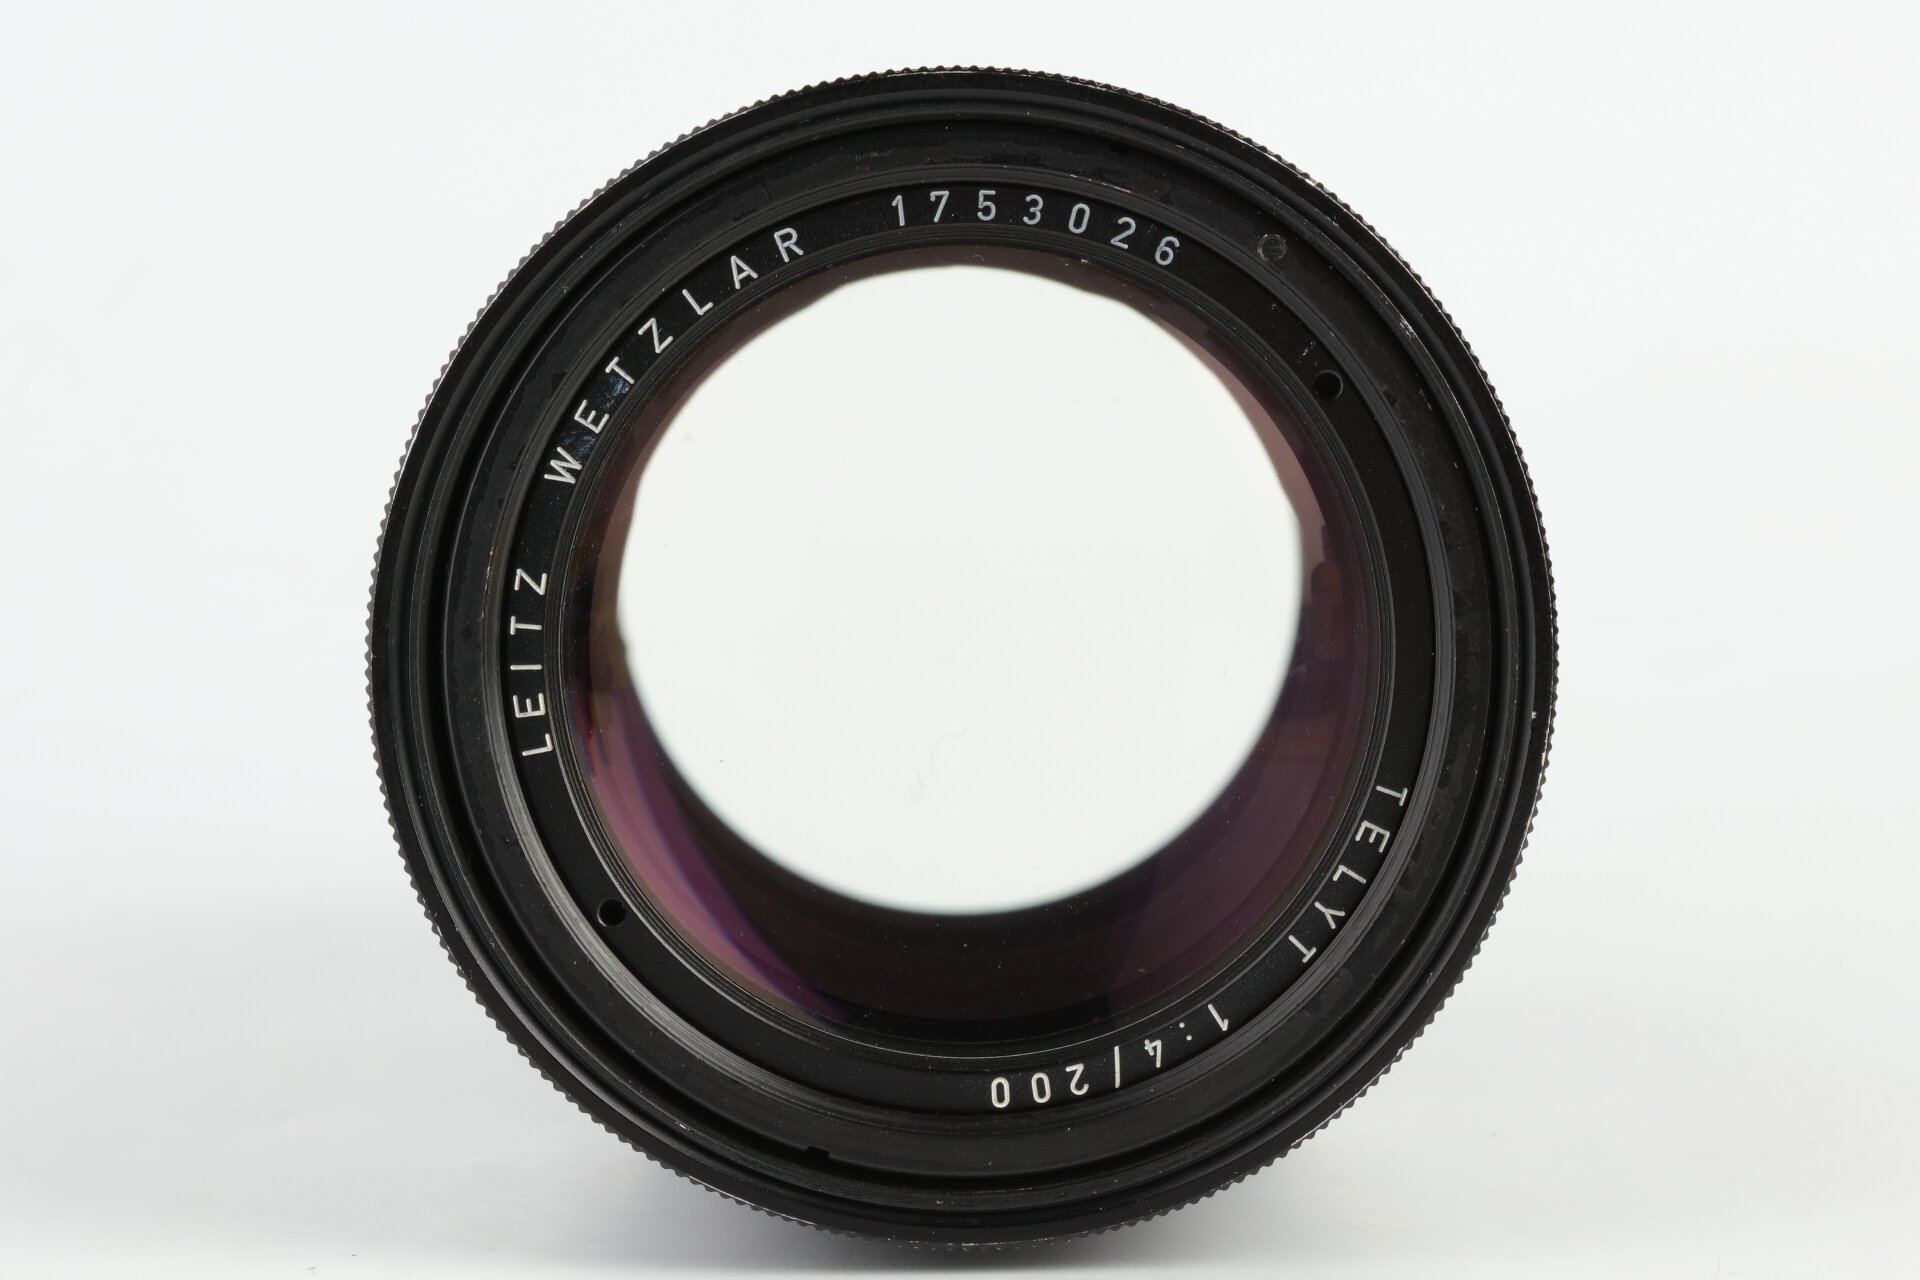 Leica Telyt 200mm 4 Visoflex mit Adapter 16466 M39 / M Leitz